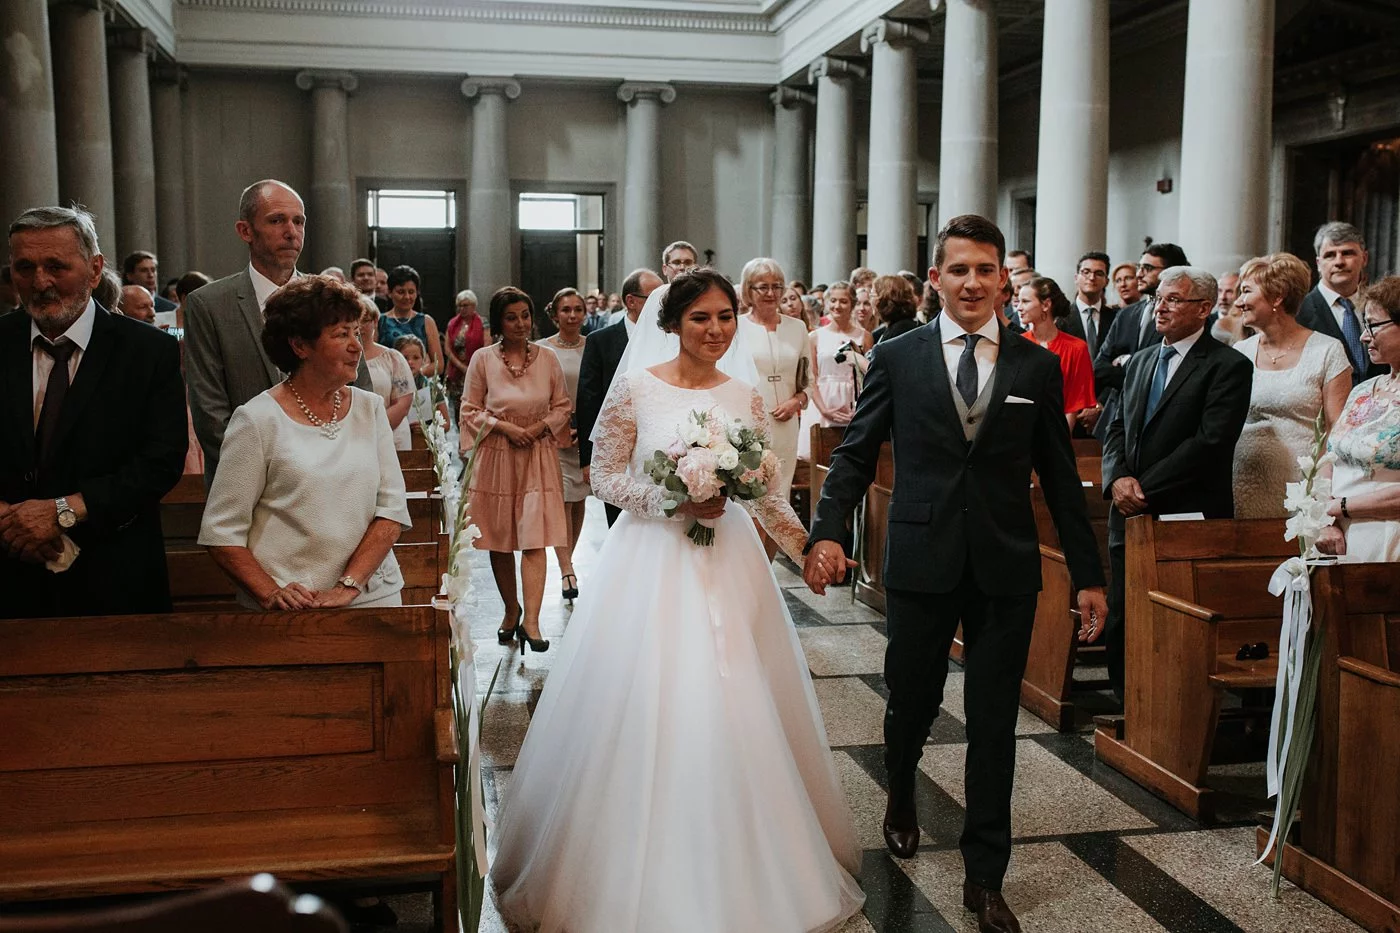 Dominika & Aleksander - Rustykalne wesele w stodole - Baborówko 47